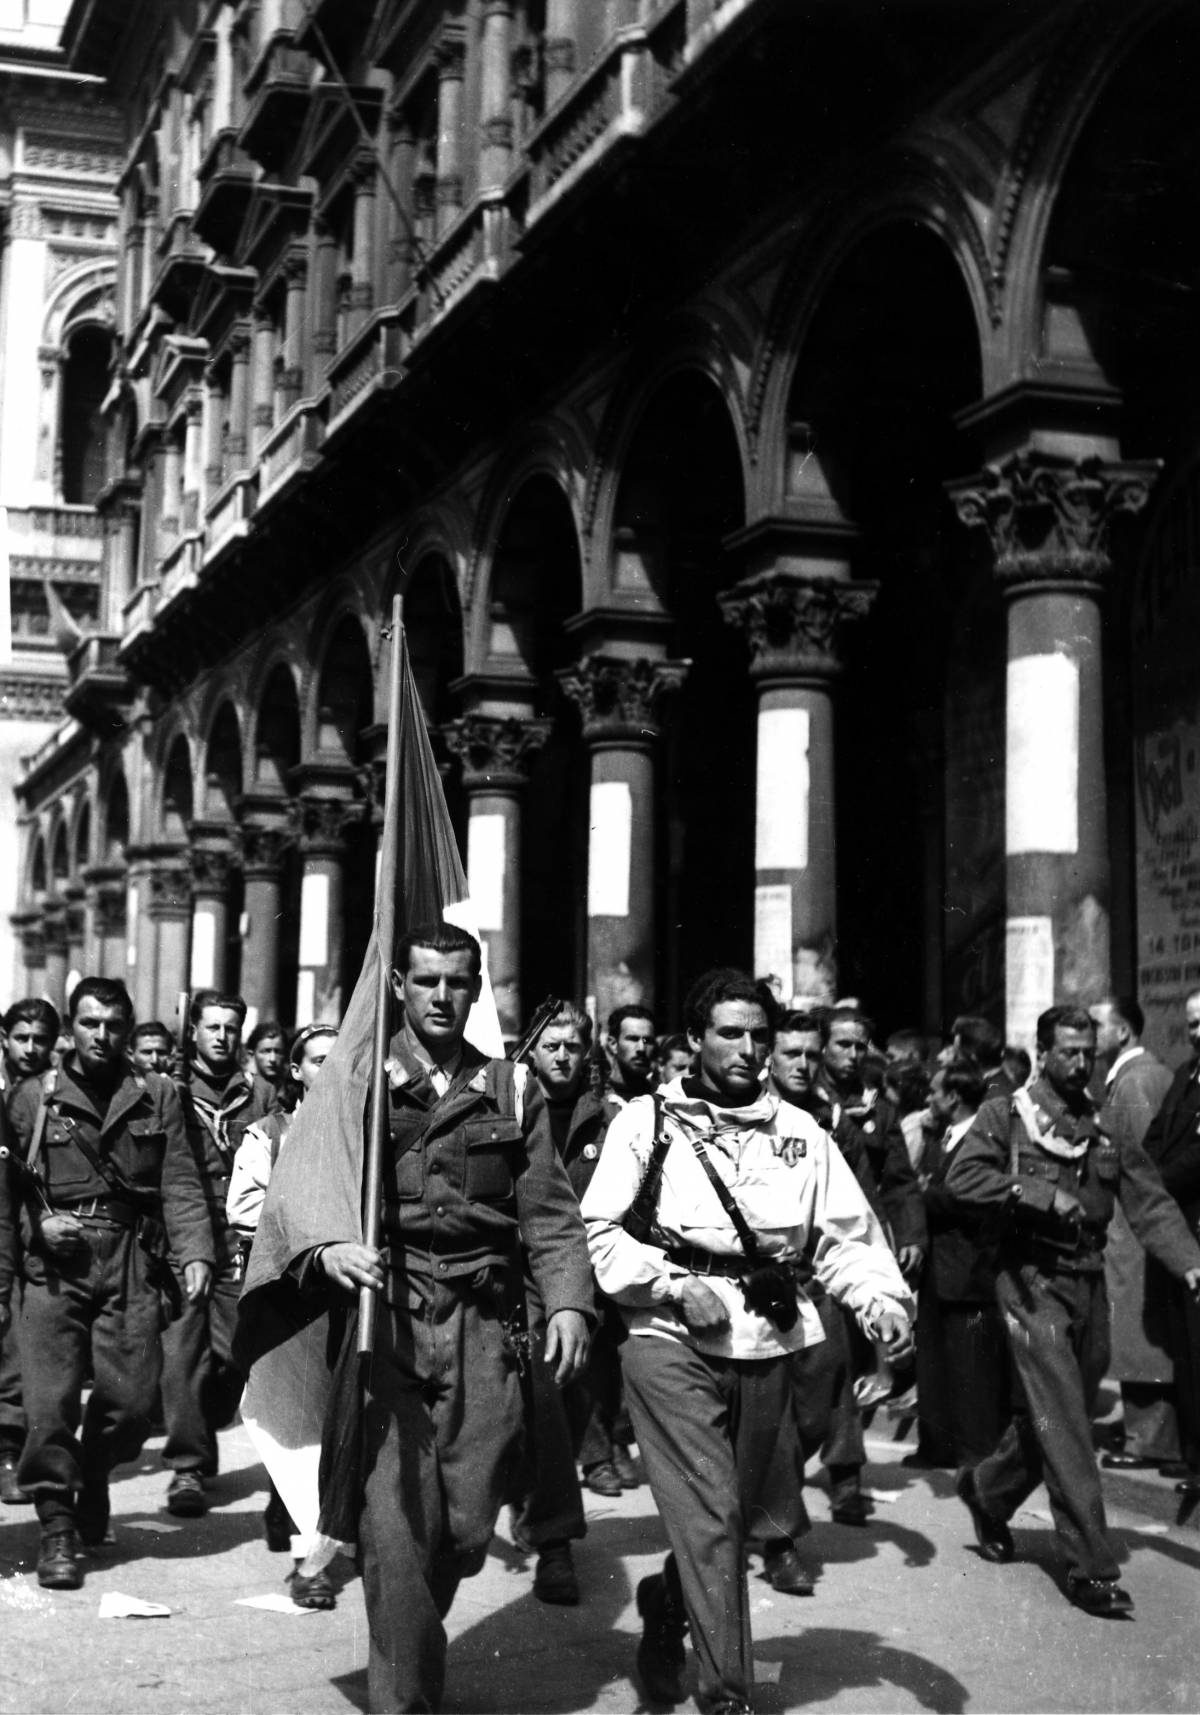 Le truppe partigiane marciano lungo le vie di Milano